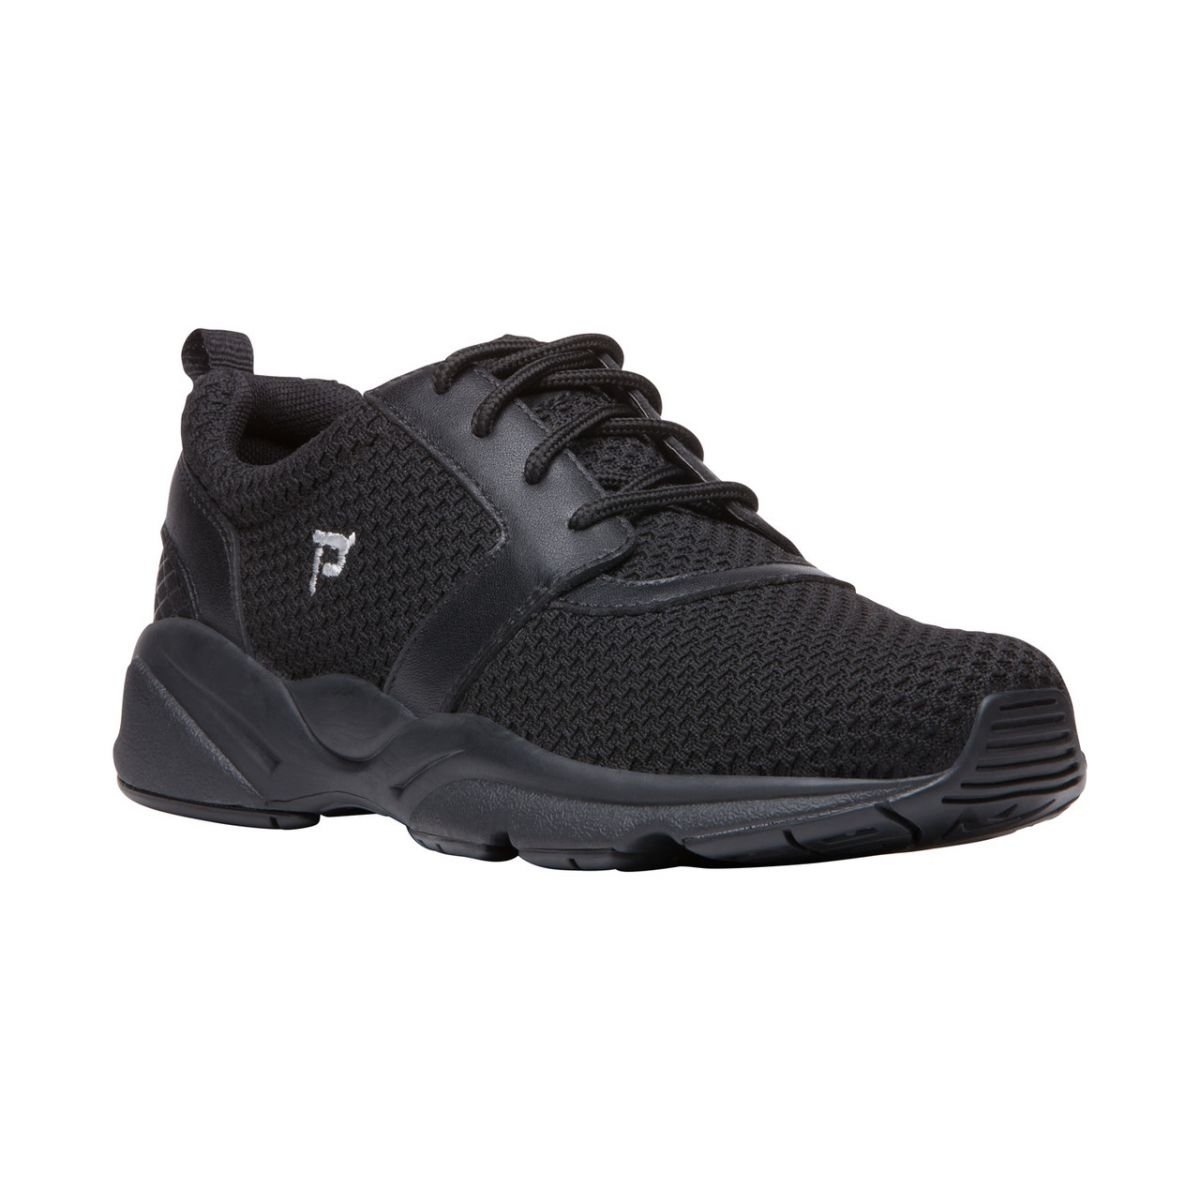 Propet Women's Stability X Walking Shoe Black - WAA032MBLK BLACK - BLACK, 6.5 Wide